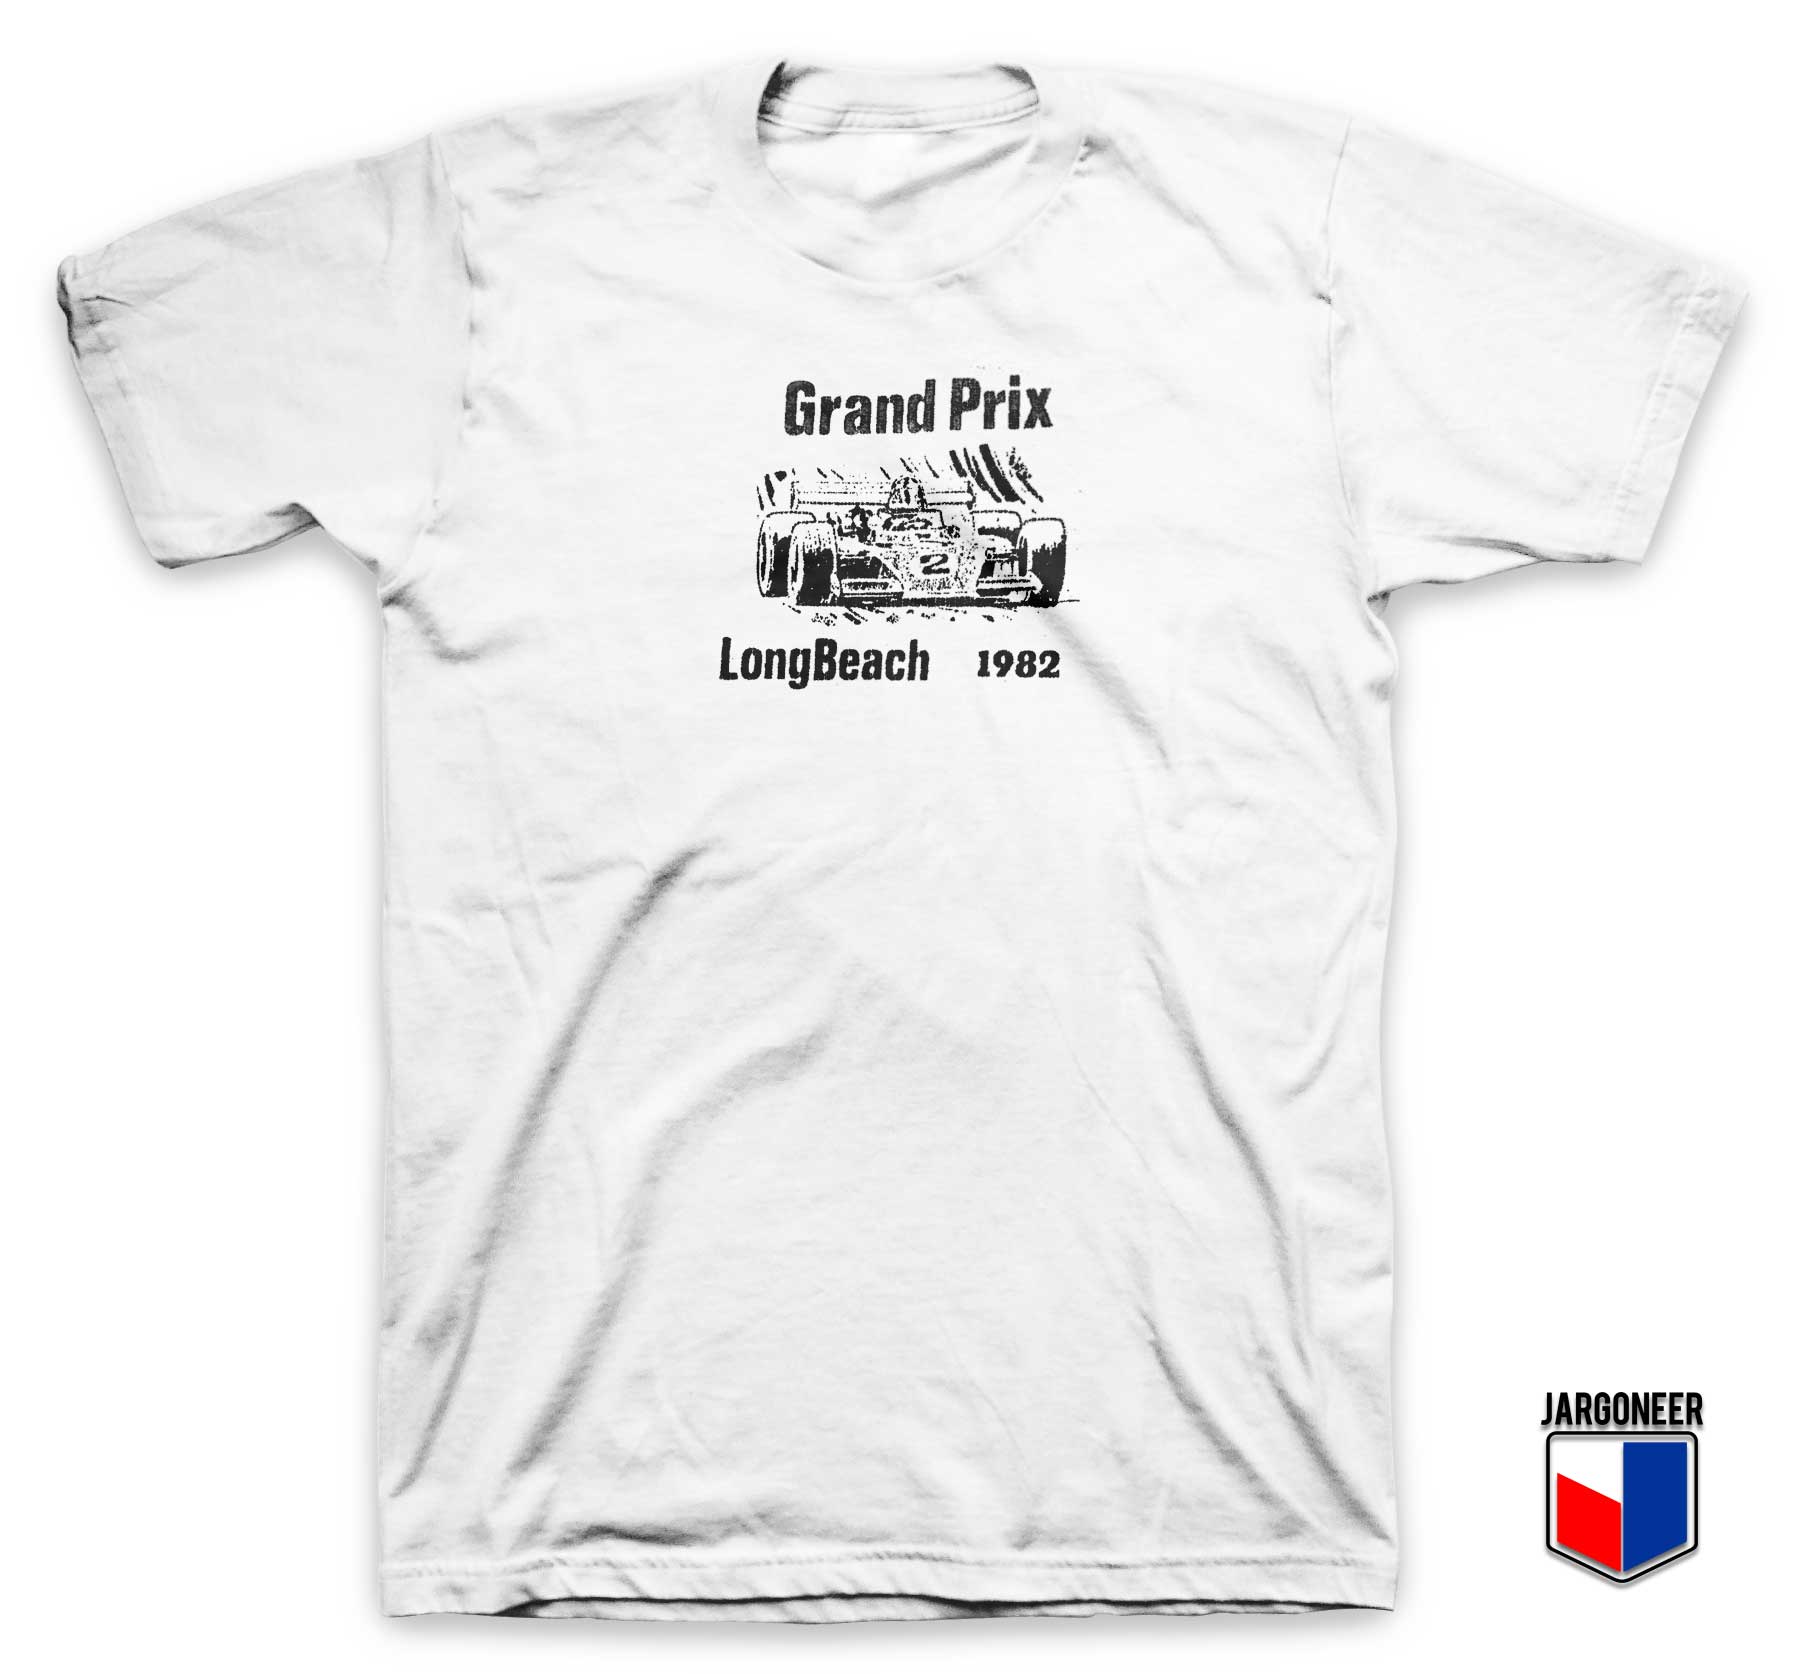 Grand Prix Long Beach 1982 T Shirt - Shop Unique Graphic Cool Shirt Designs